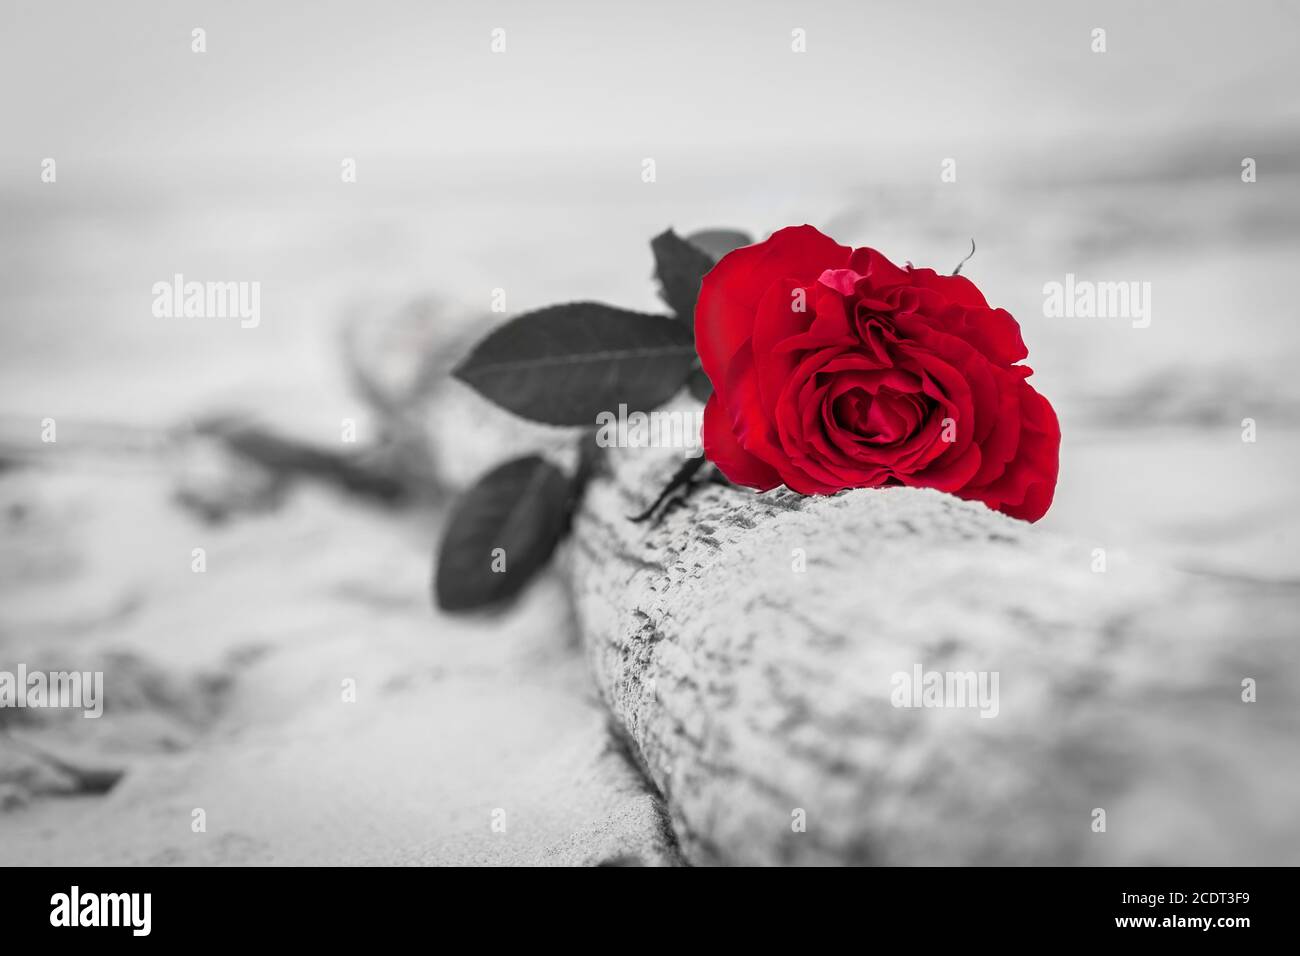 Rose rouge sur la plage. Couleur par rapport au noir et blanc. Amour, romance, mélancolie concepts. Banque D'Images